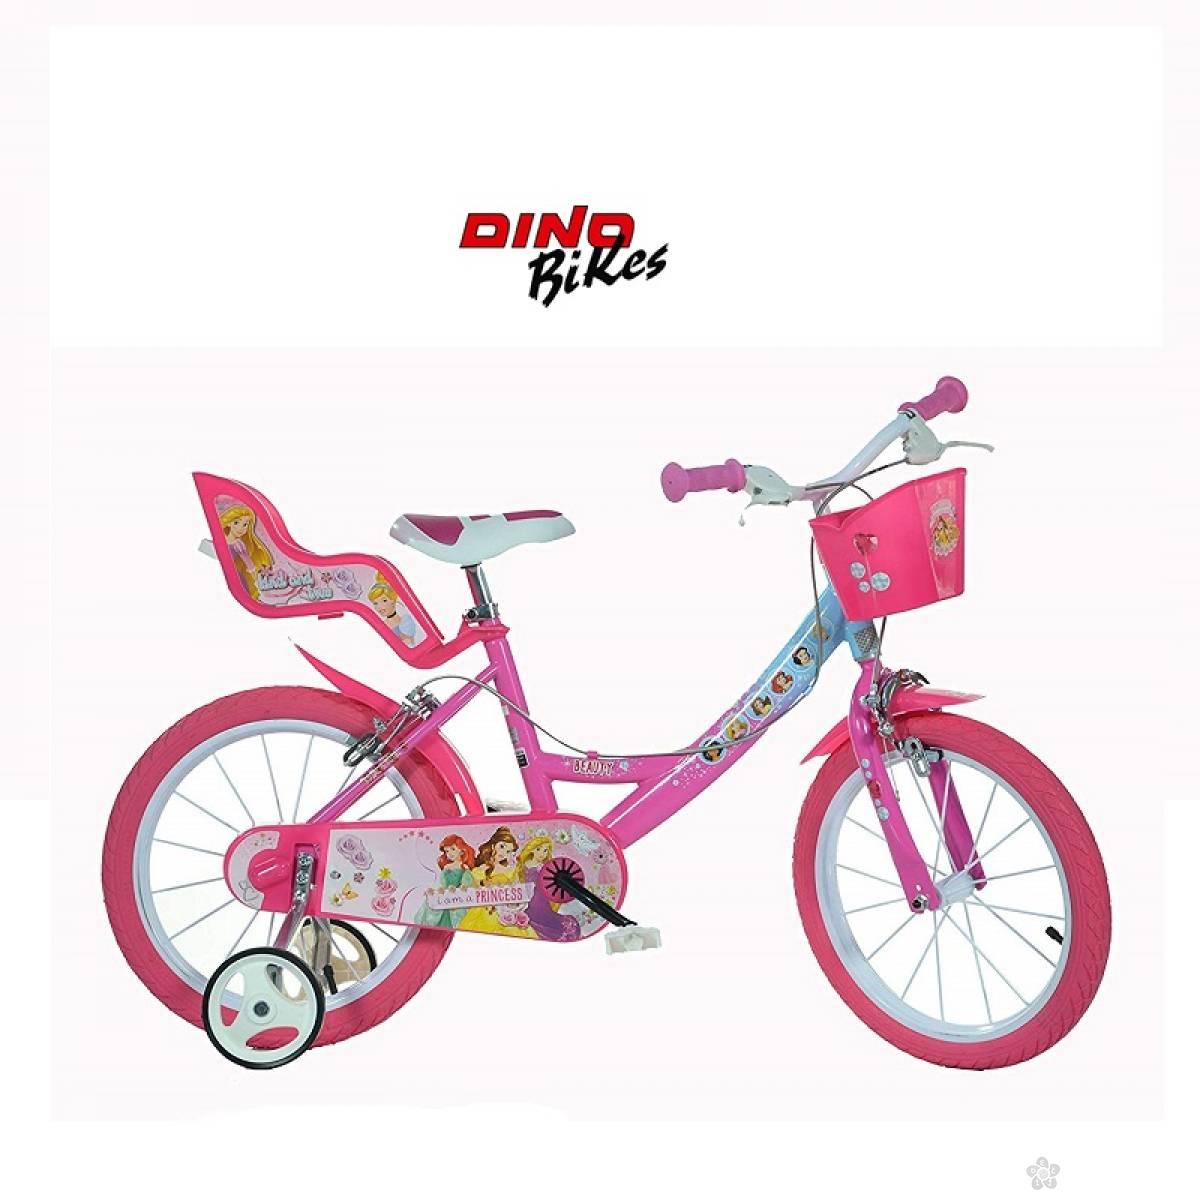 Bicikl za decu Model 720-20″ Sport Division zeleni 